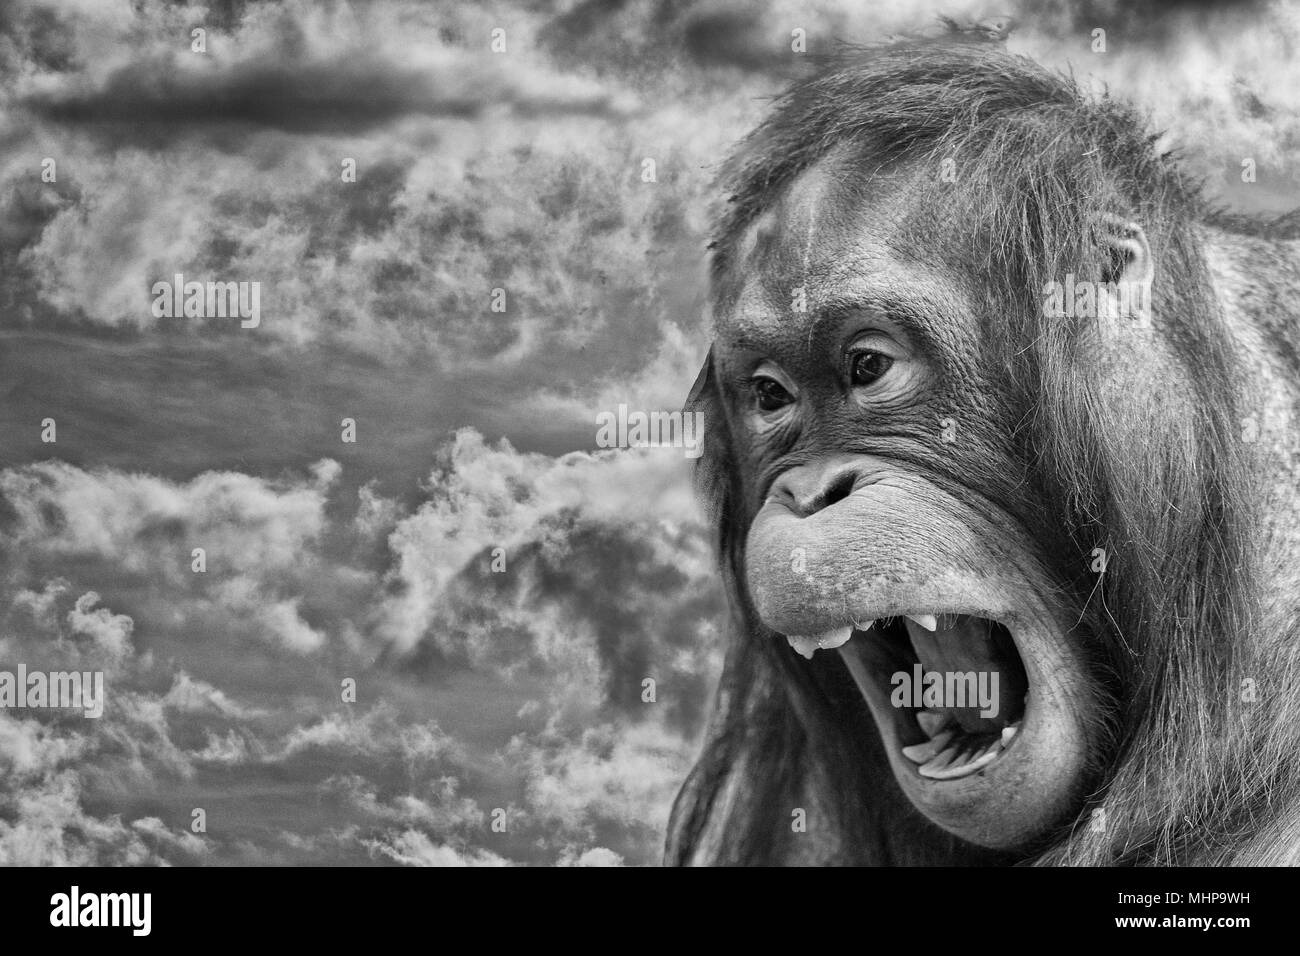 Orang Utan monkey verticale sul tramonto d'oro sfondo in bianco e nero Foto Stock